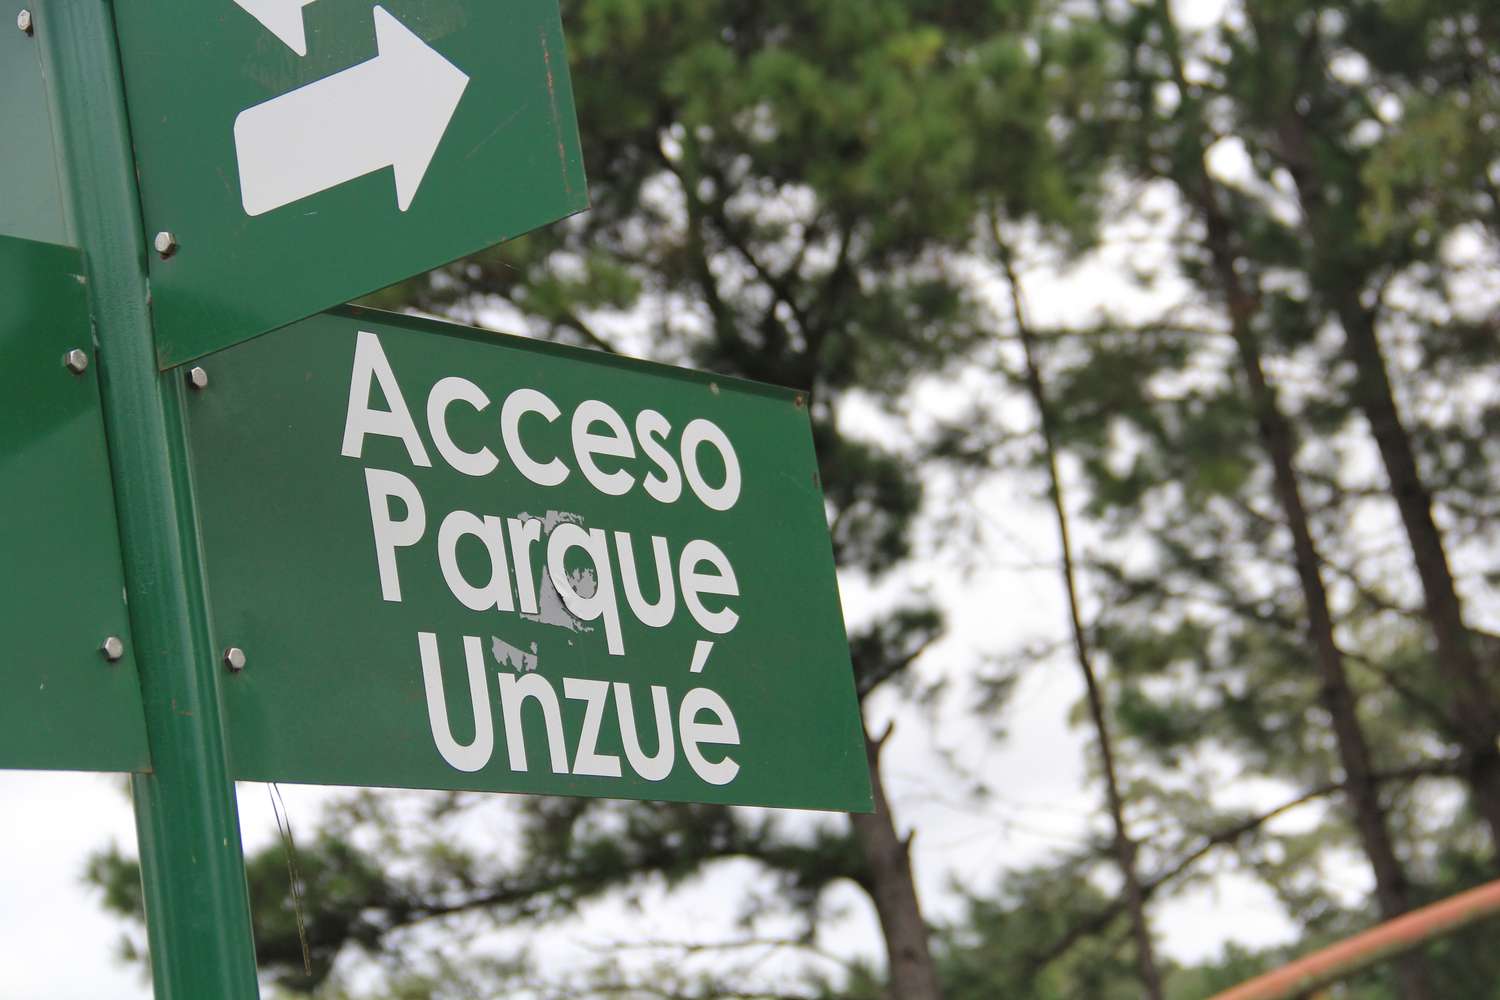 Convocan a formar con telas blancas la palabra "Amazonía" en el parque Unzué